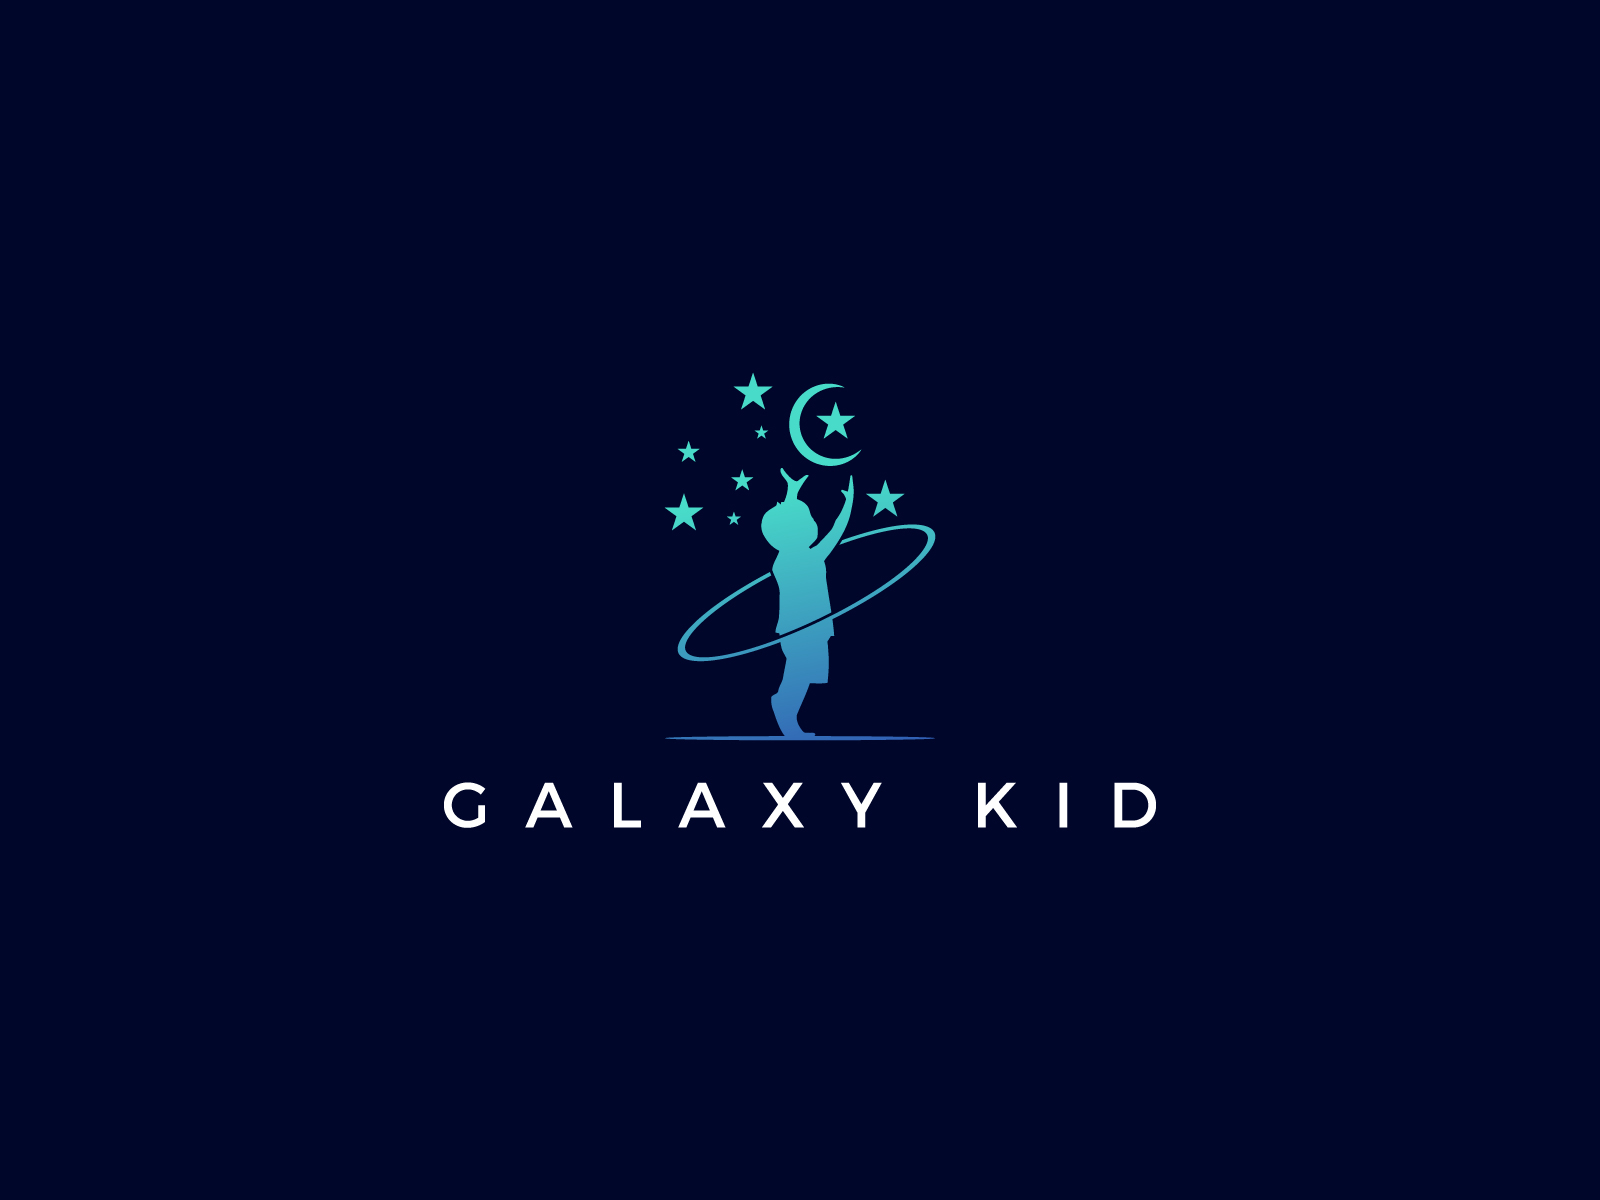 Design a minimalist galaxy logo for a clothing brand on Craiyon